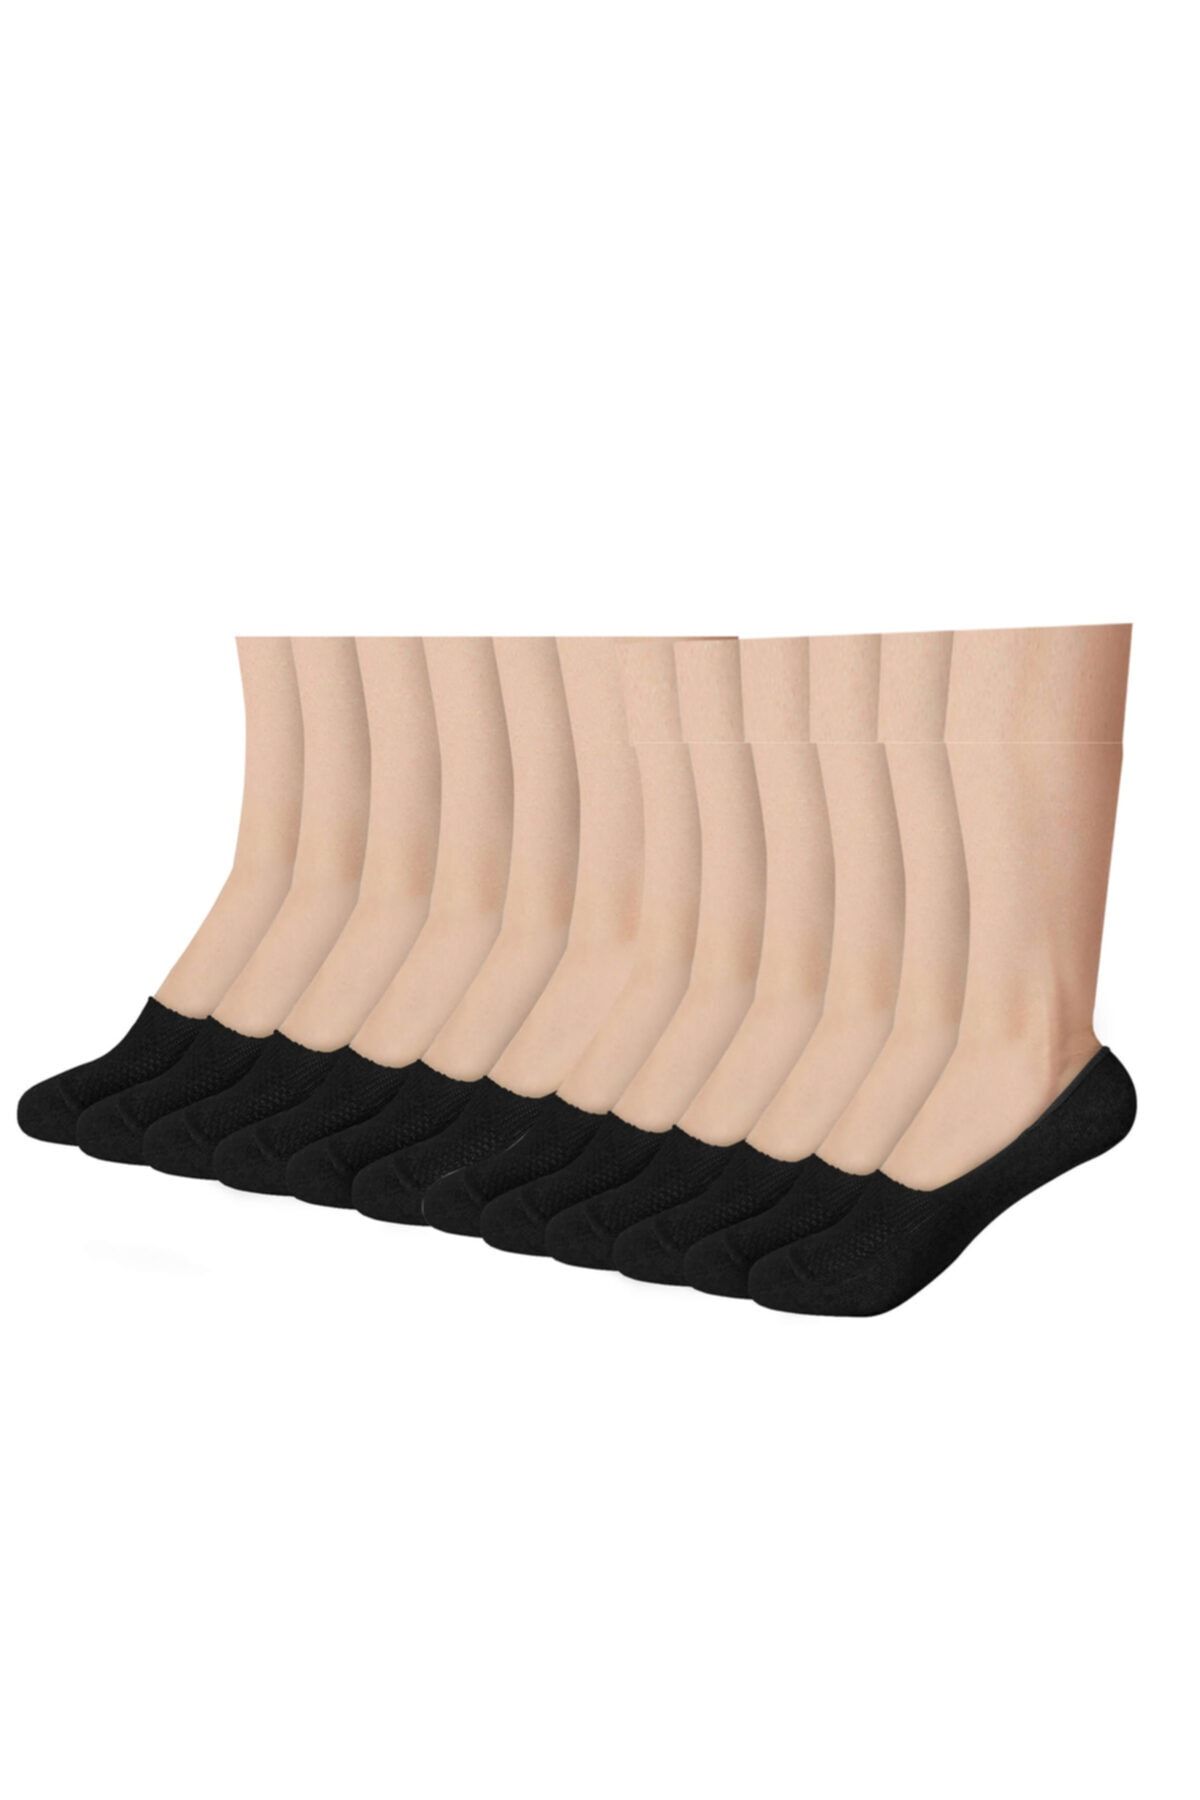 MEM SOCKS Unisex Siyah Silikonlu Fileli Babet Çorabı 12'li